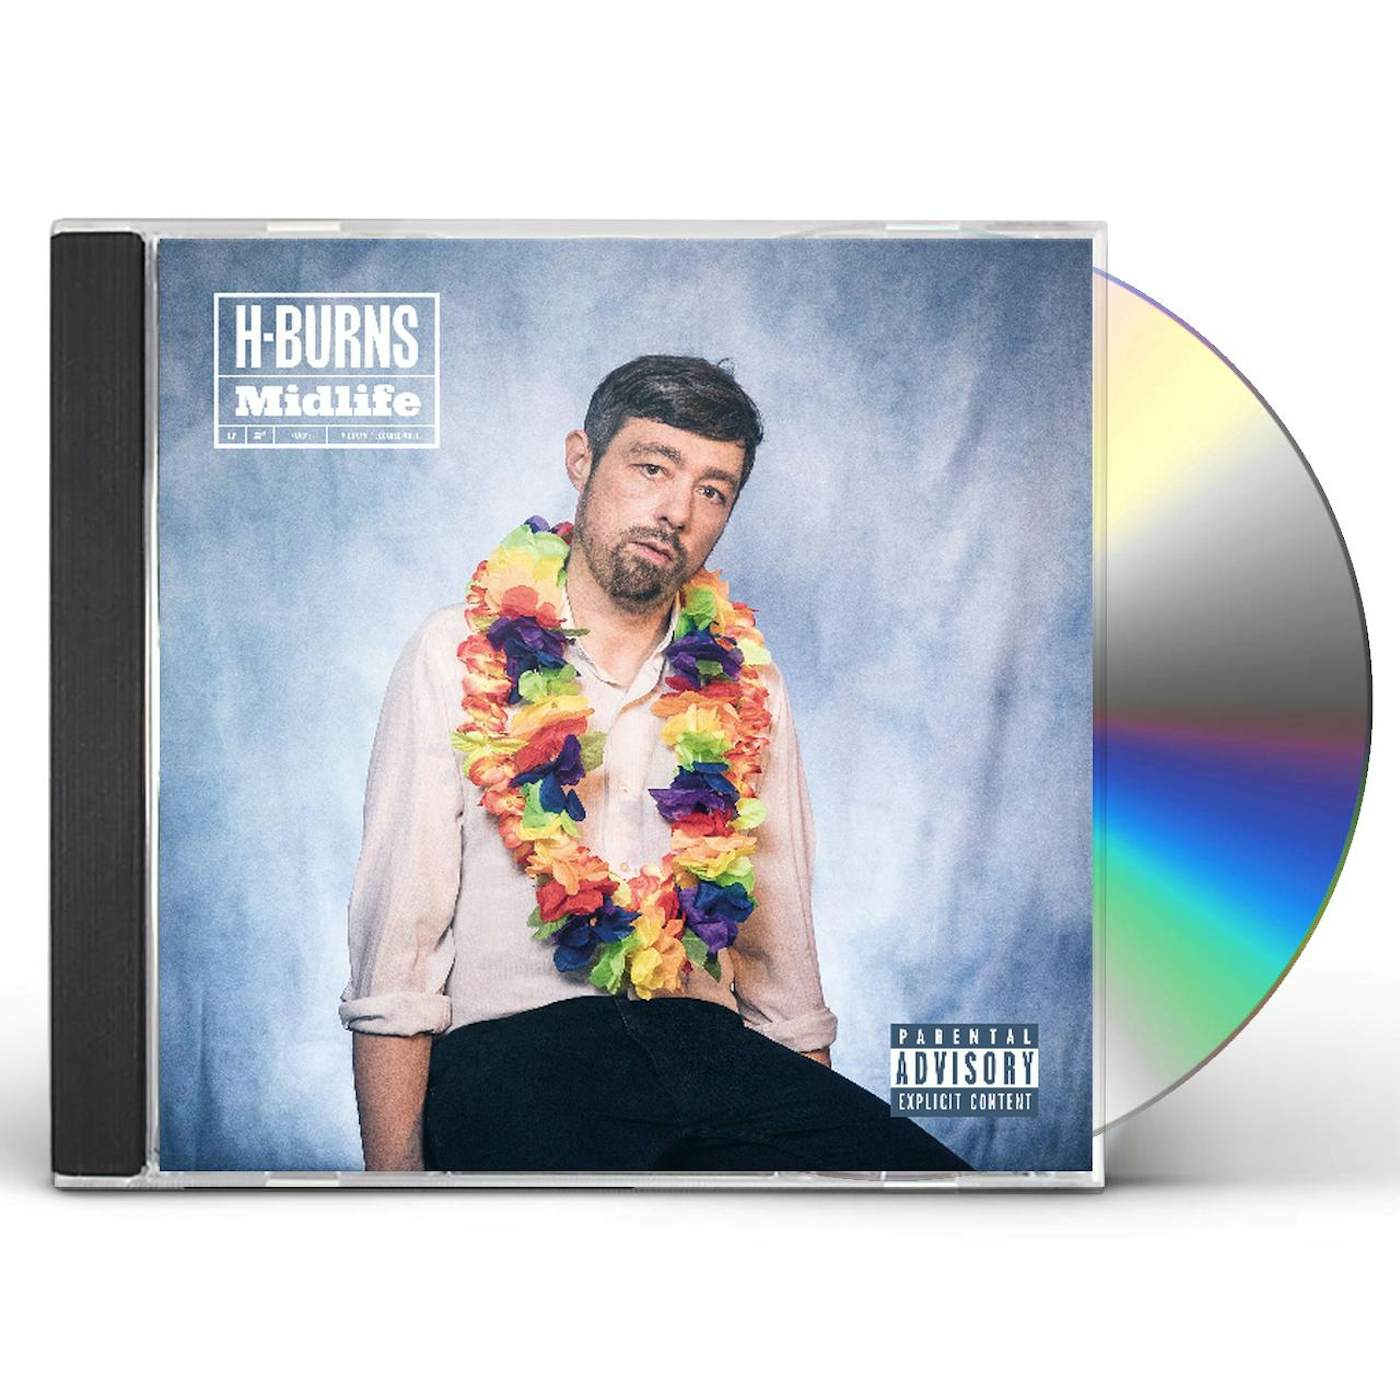 H-Burns MIDLIFE CD